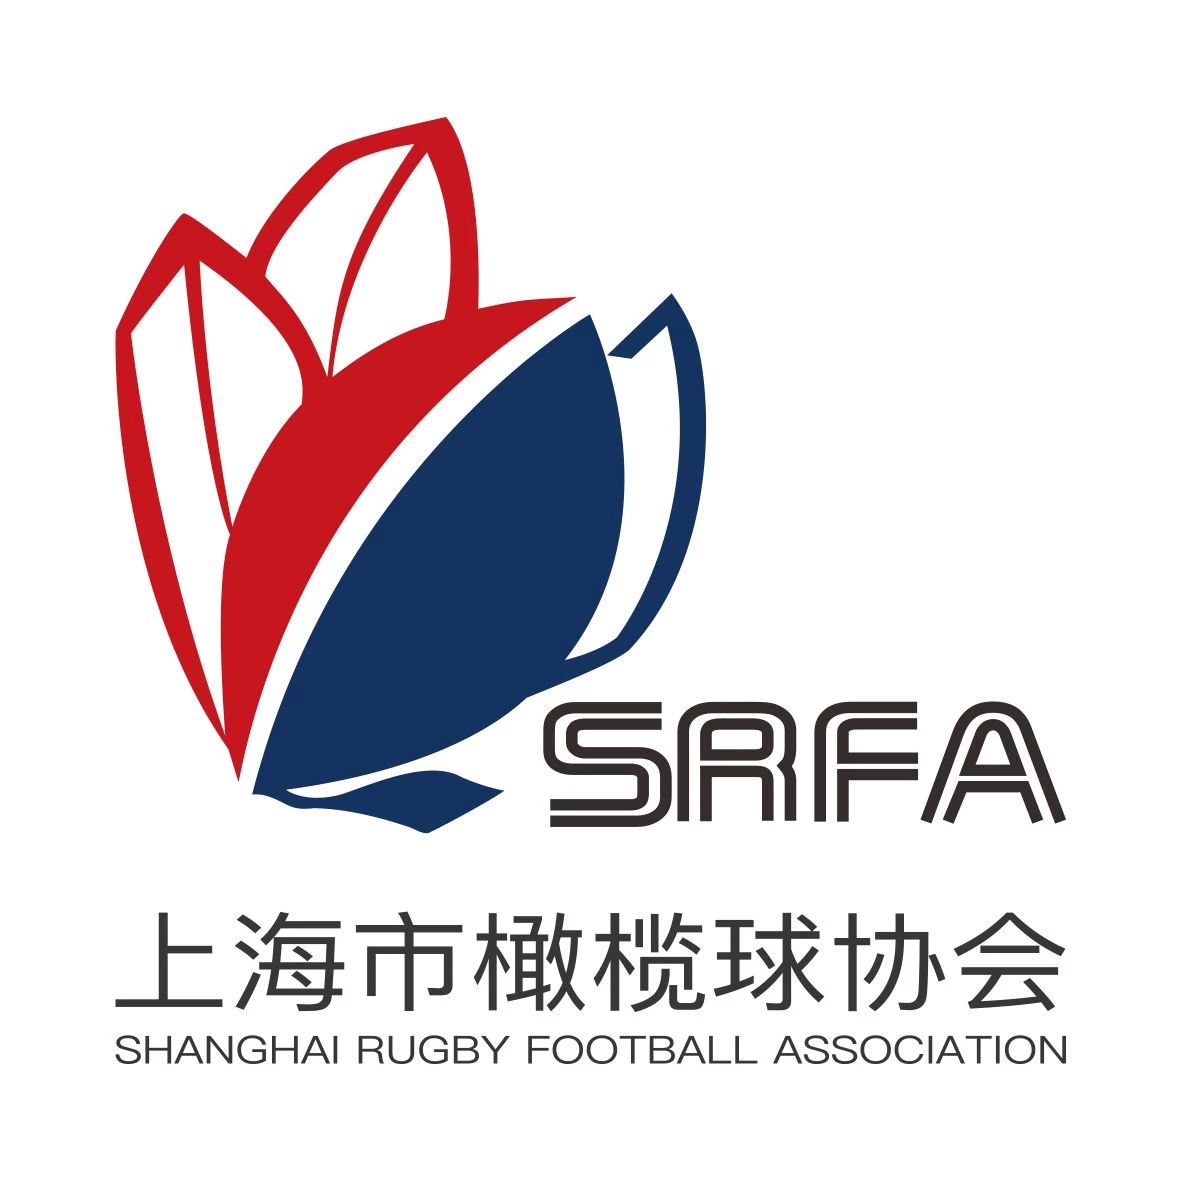 上海市橄榄球协会关于对裁判员俞家铭同志的出发决定